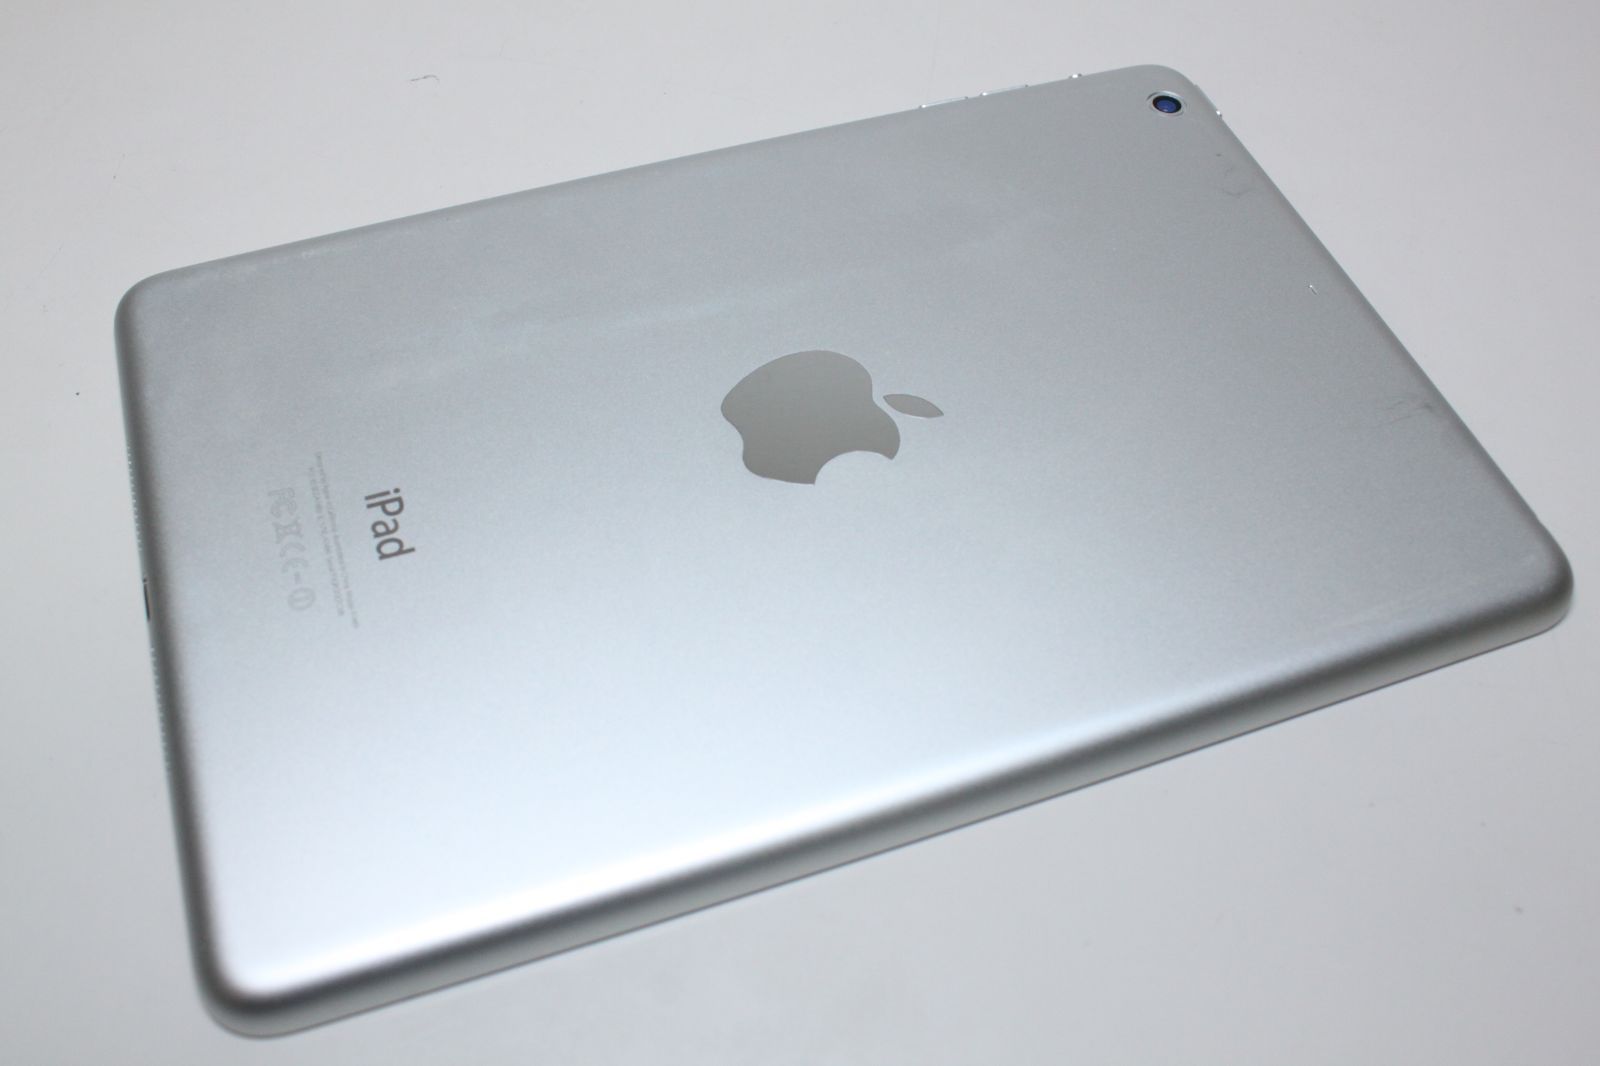 iPad mini 2/Wi-Fi/16GB〈ME279J/A〉A1489 ④16GBバッテリー最大容量